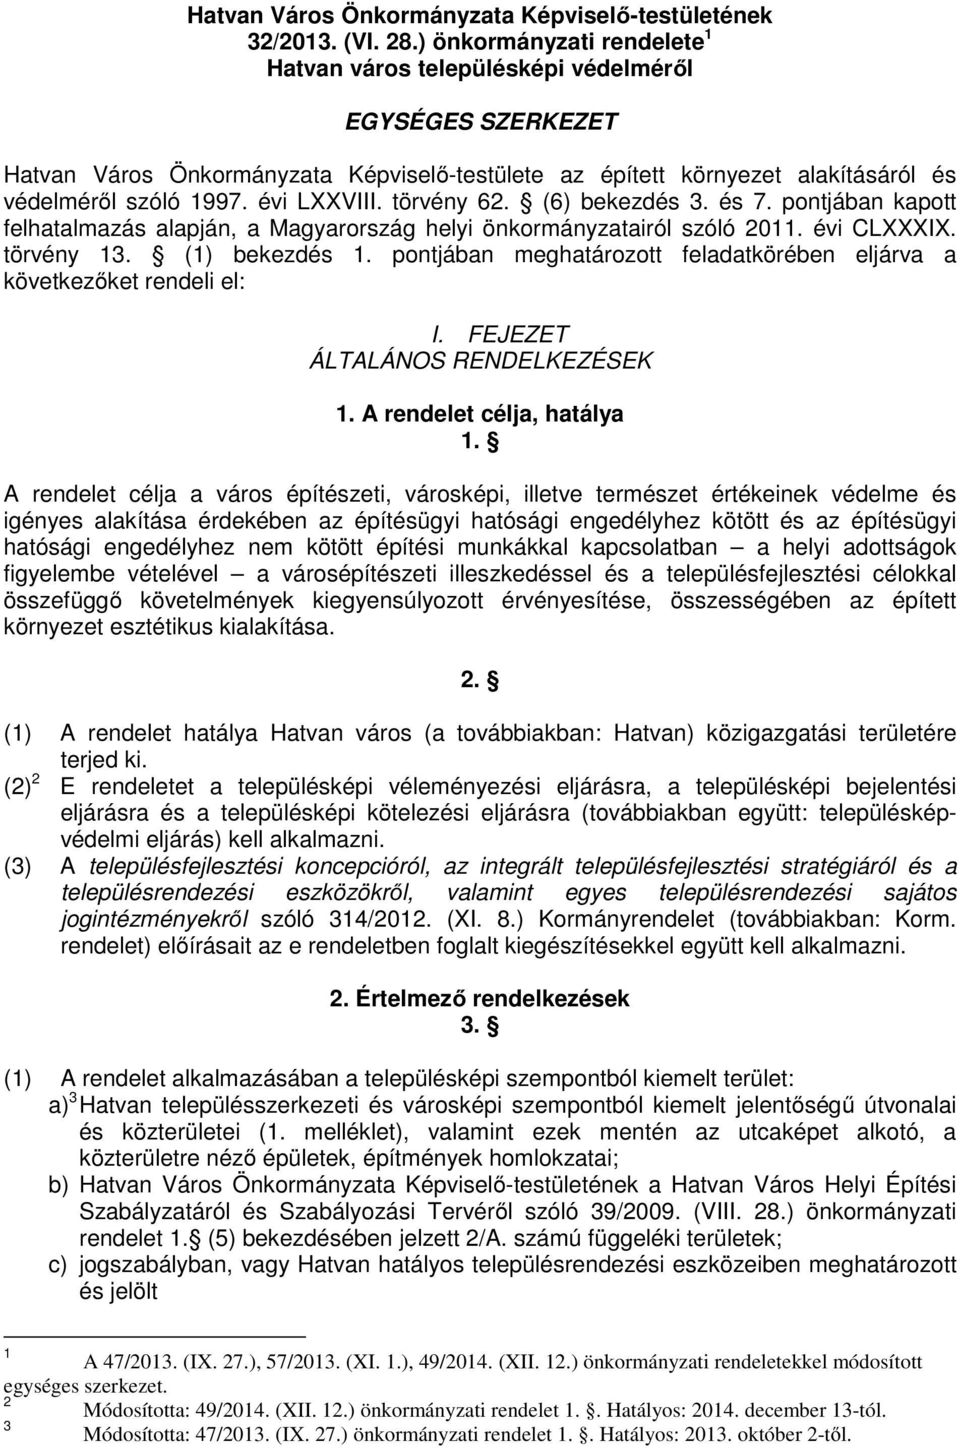 évi LXXVIII. törvény 62. (6) bekezdés 3. és 7. pontjában kapott felhatalmazás alapján, a Magyarország helyi önkormányzatairól szóló 2011. évi CLXXXIX. törvény 13. (1) bekezdés 1.